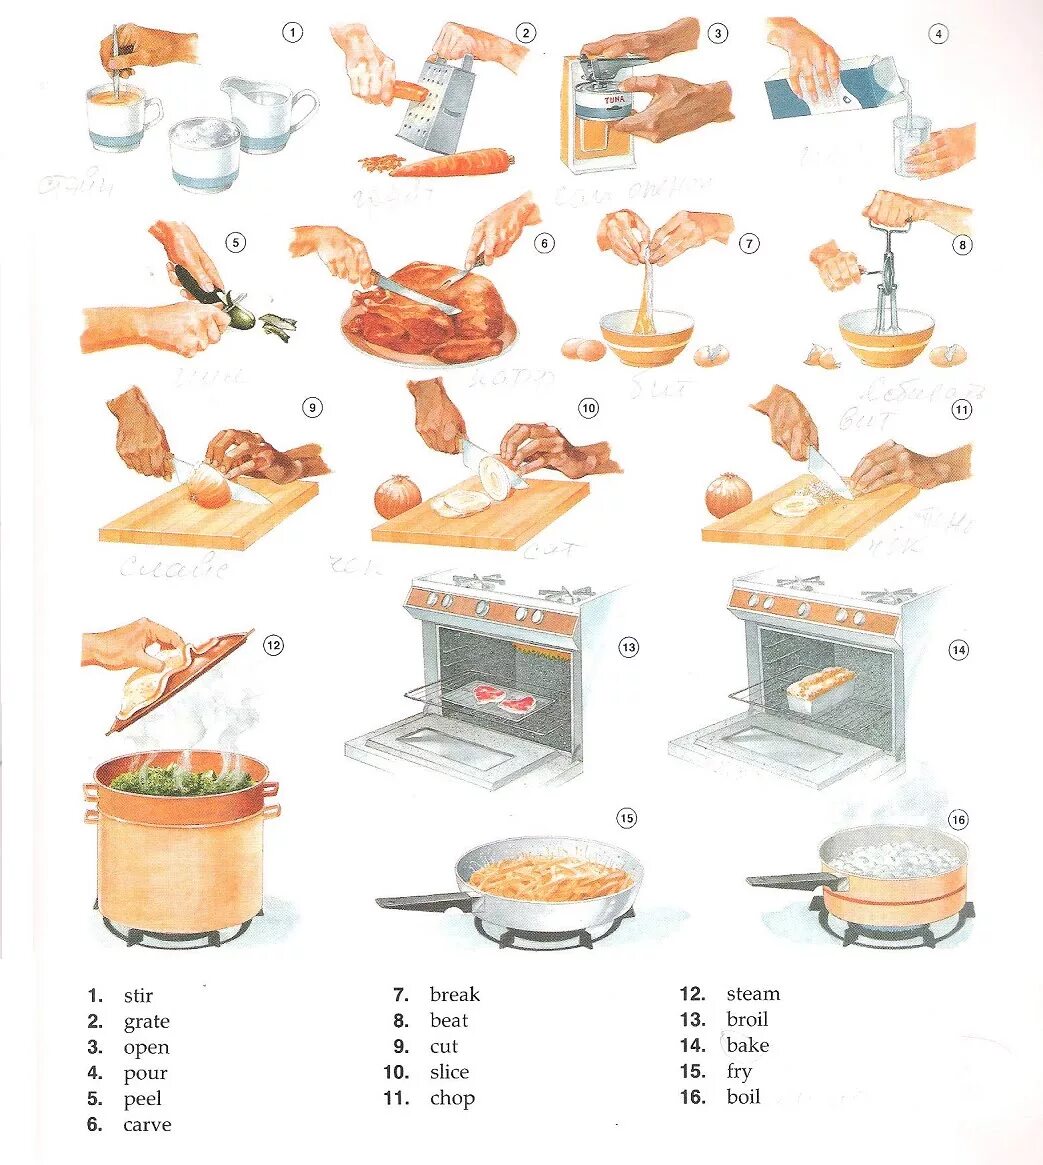 Cookery перевод. Глаголы приготовления пищи. Приготовление пищи на английском. Готовка еды на английском языке. Шдашолы для приготовления пищи.